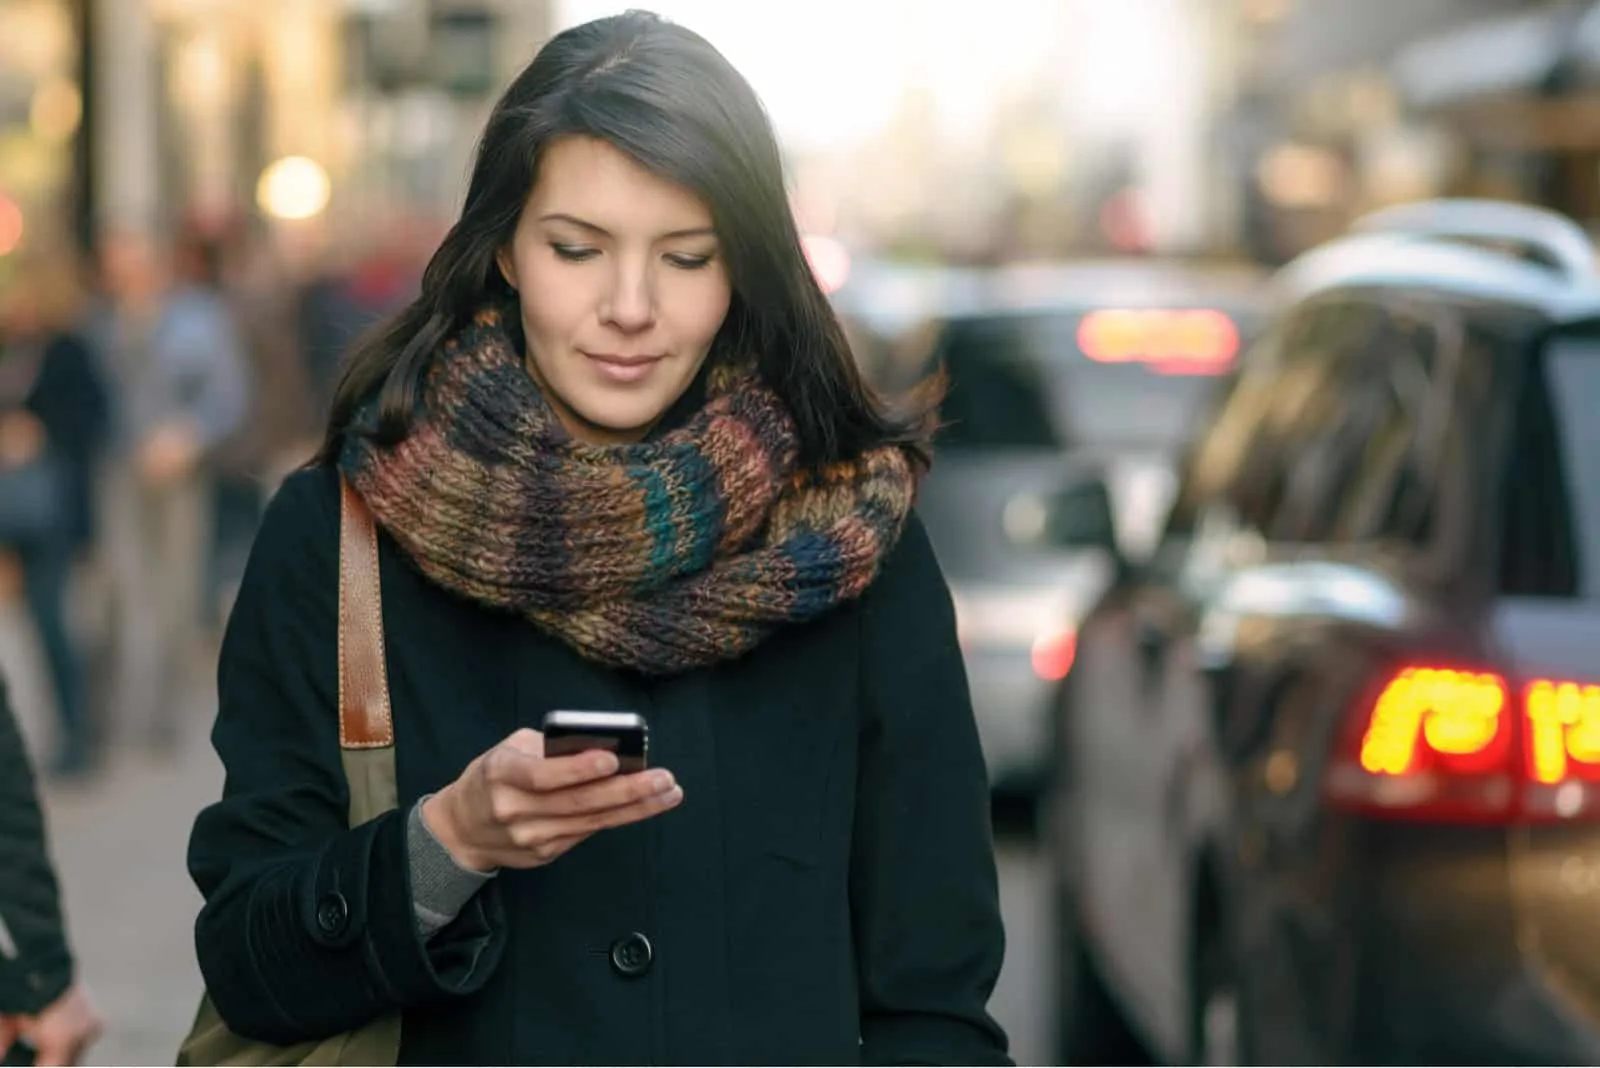 Eine Frau in einem schwarzen Mantel geht die Straße entlang und sendet eine SMS auf ihr Smartphone